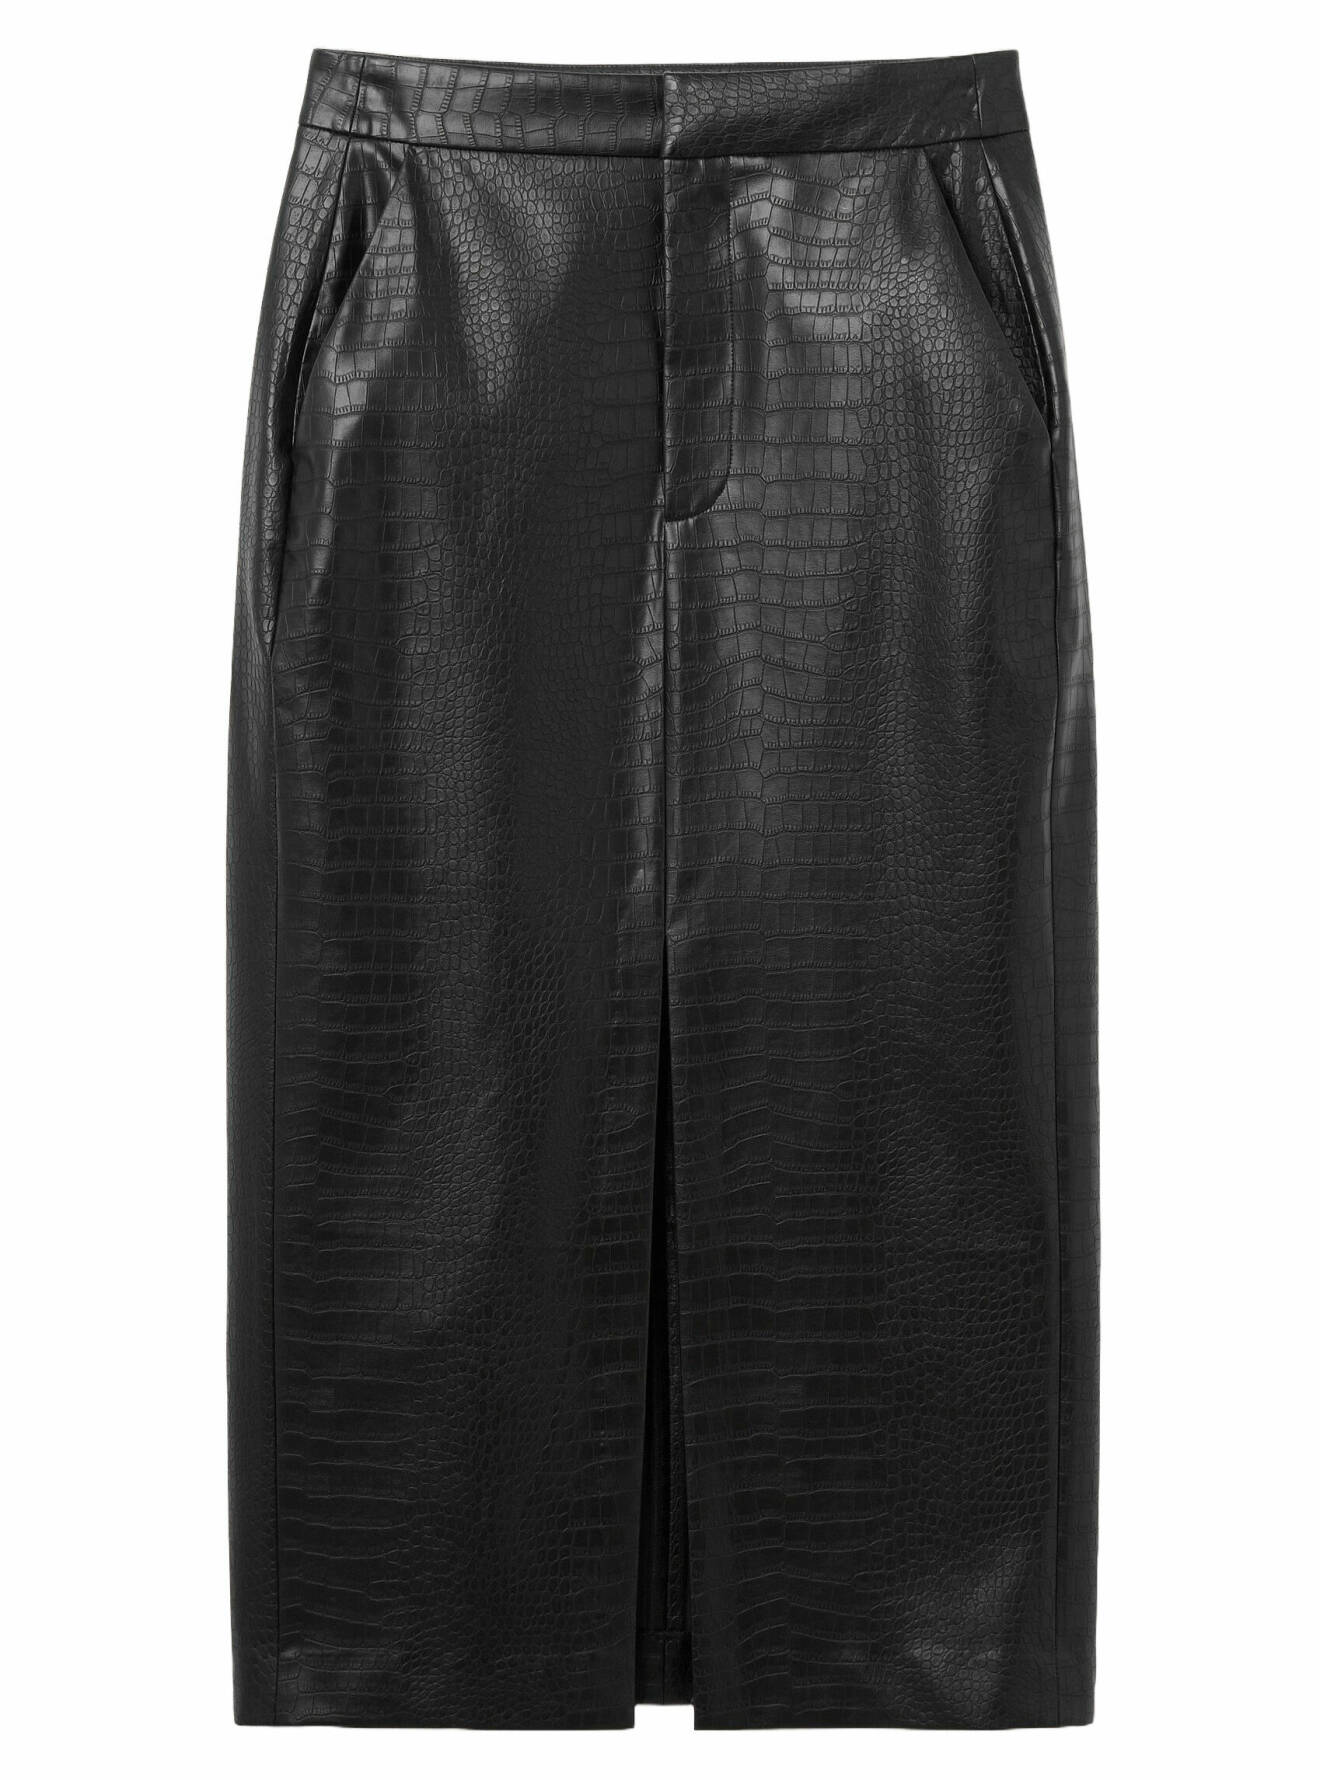 svart kjol med slits från mq maqet